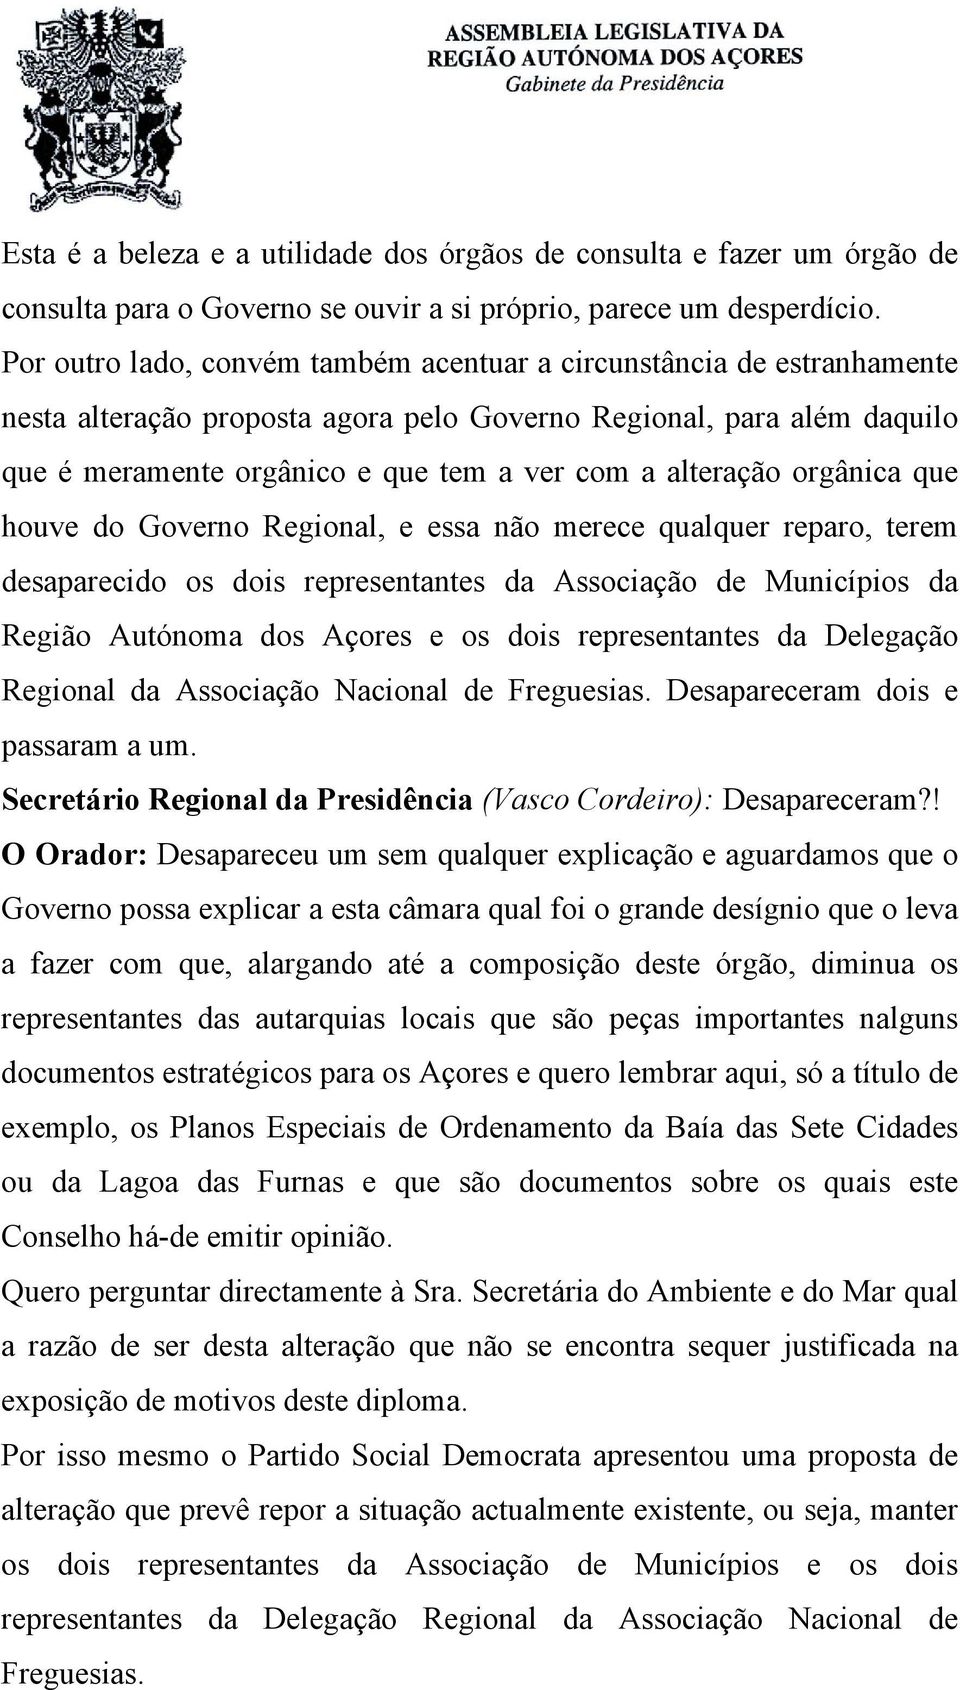 alteração orgânica que houve do Governo Regional, e essa não merece qualquer reparo, terem desaparecido os dois representantes da Associação de Municípios da Região Autónoma dos Açores e os dois